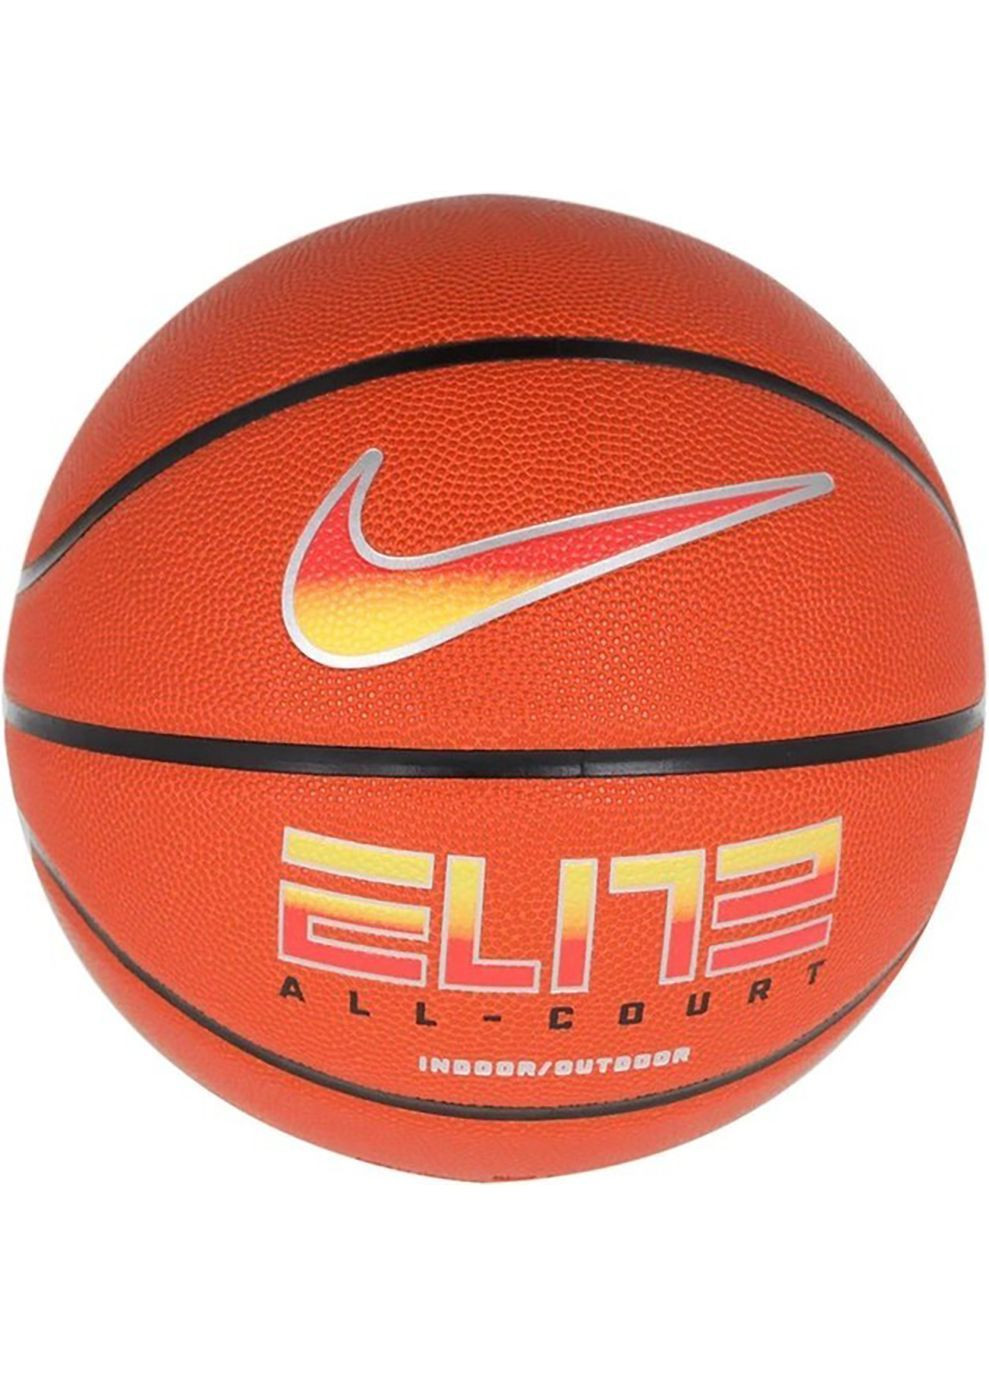 М'яч баскетбольний ELITE ALL COURT 8P 2.0 DEFLATED помаранчевий Уні 7 Nike (282317873)